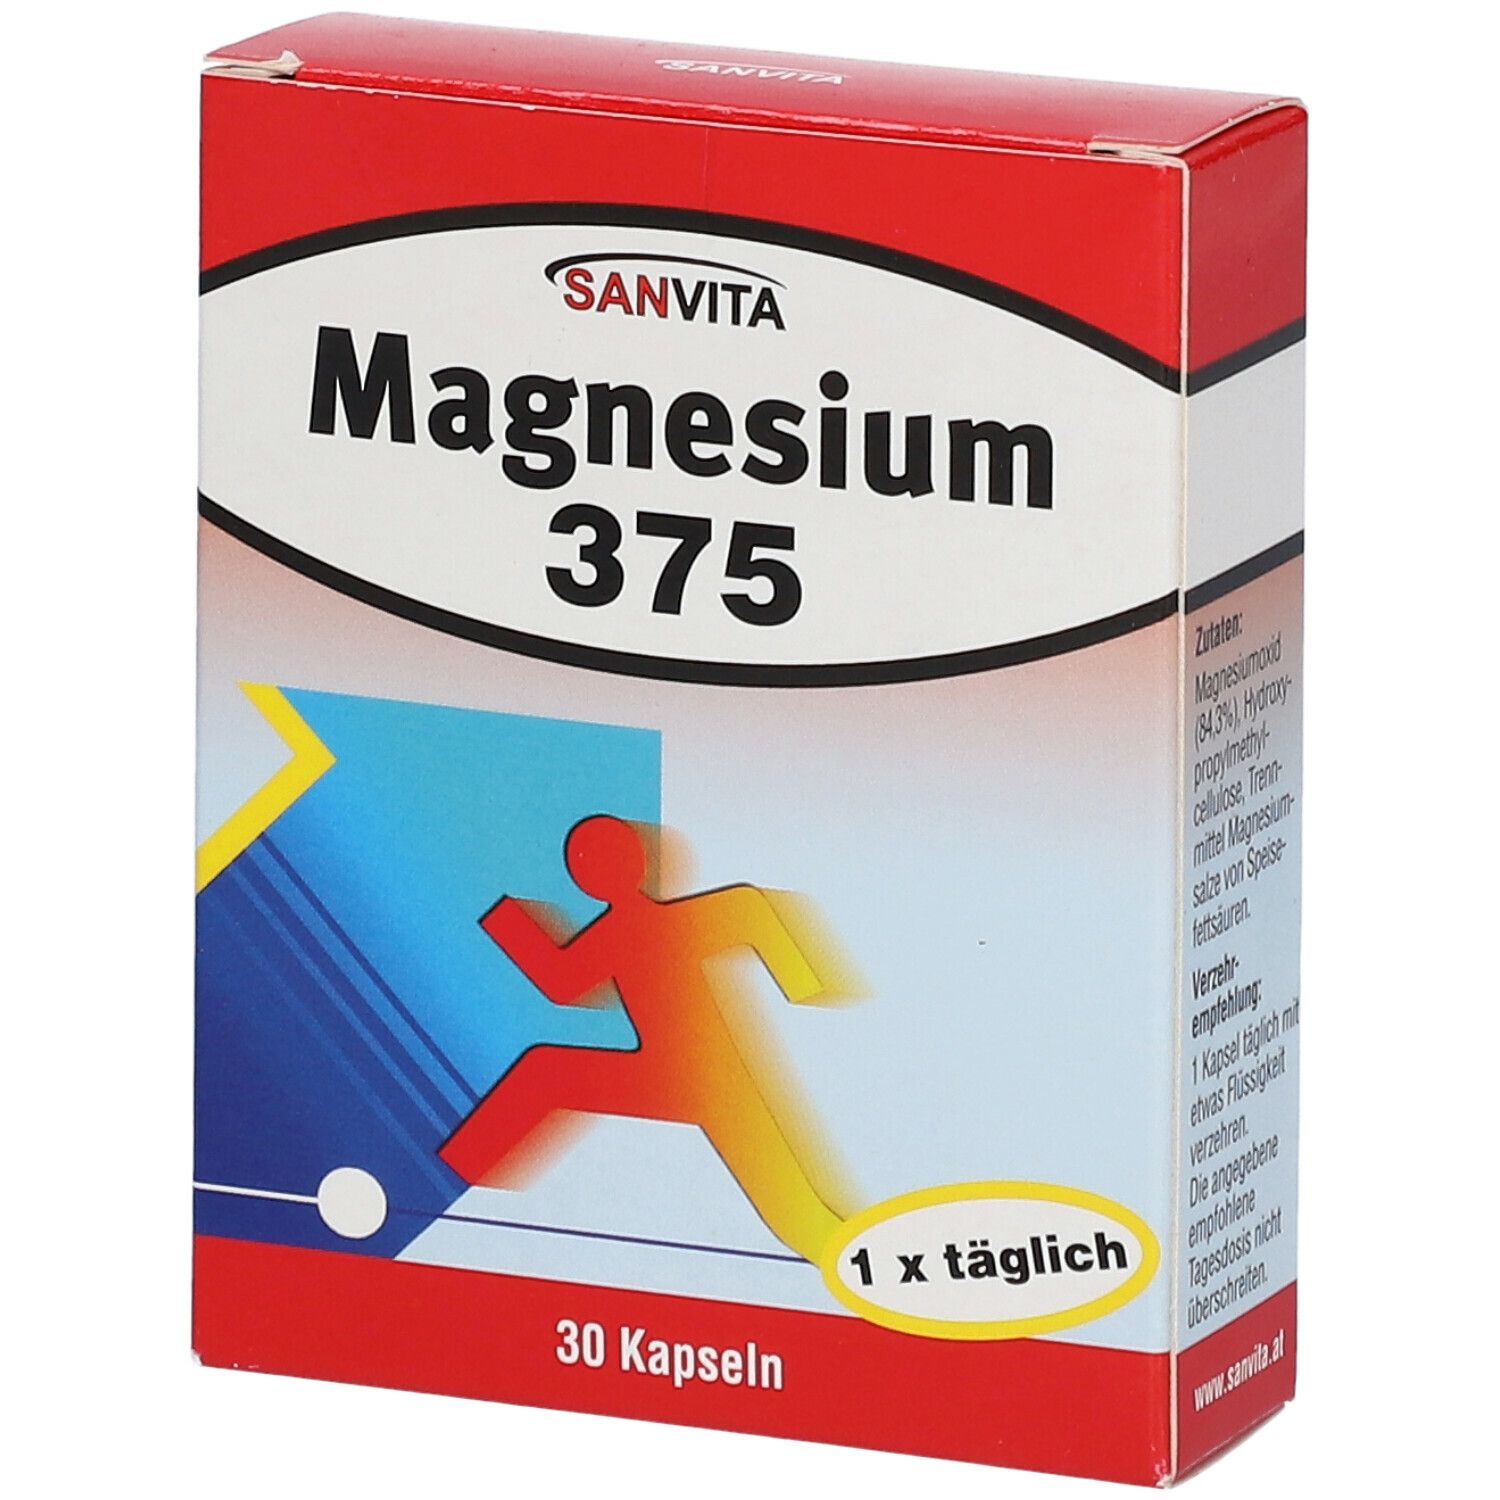 Image of SANVITA Magnesium 375